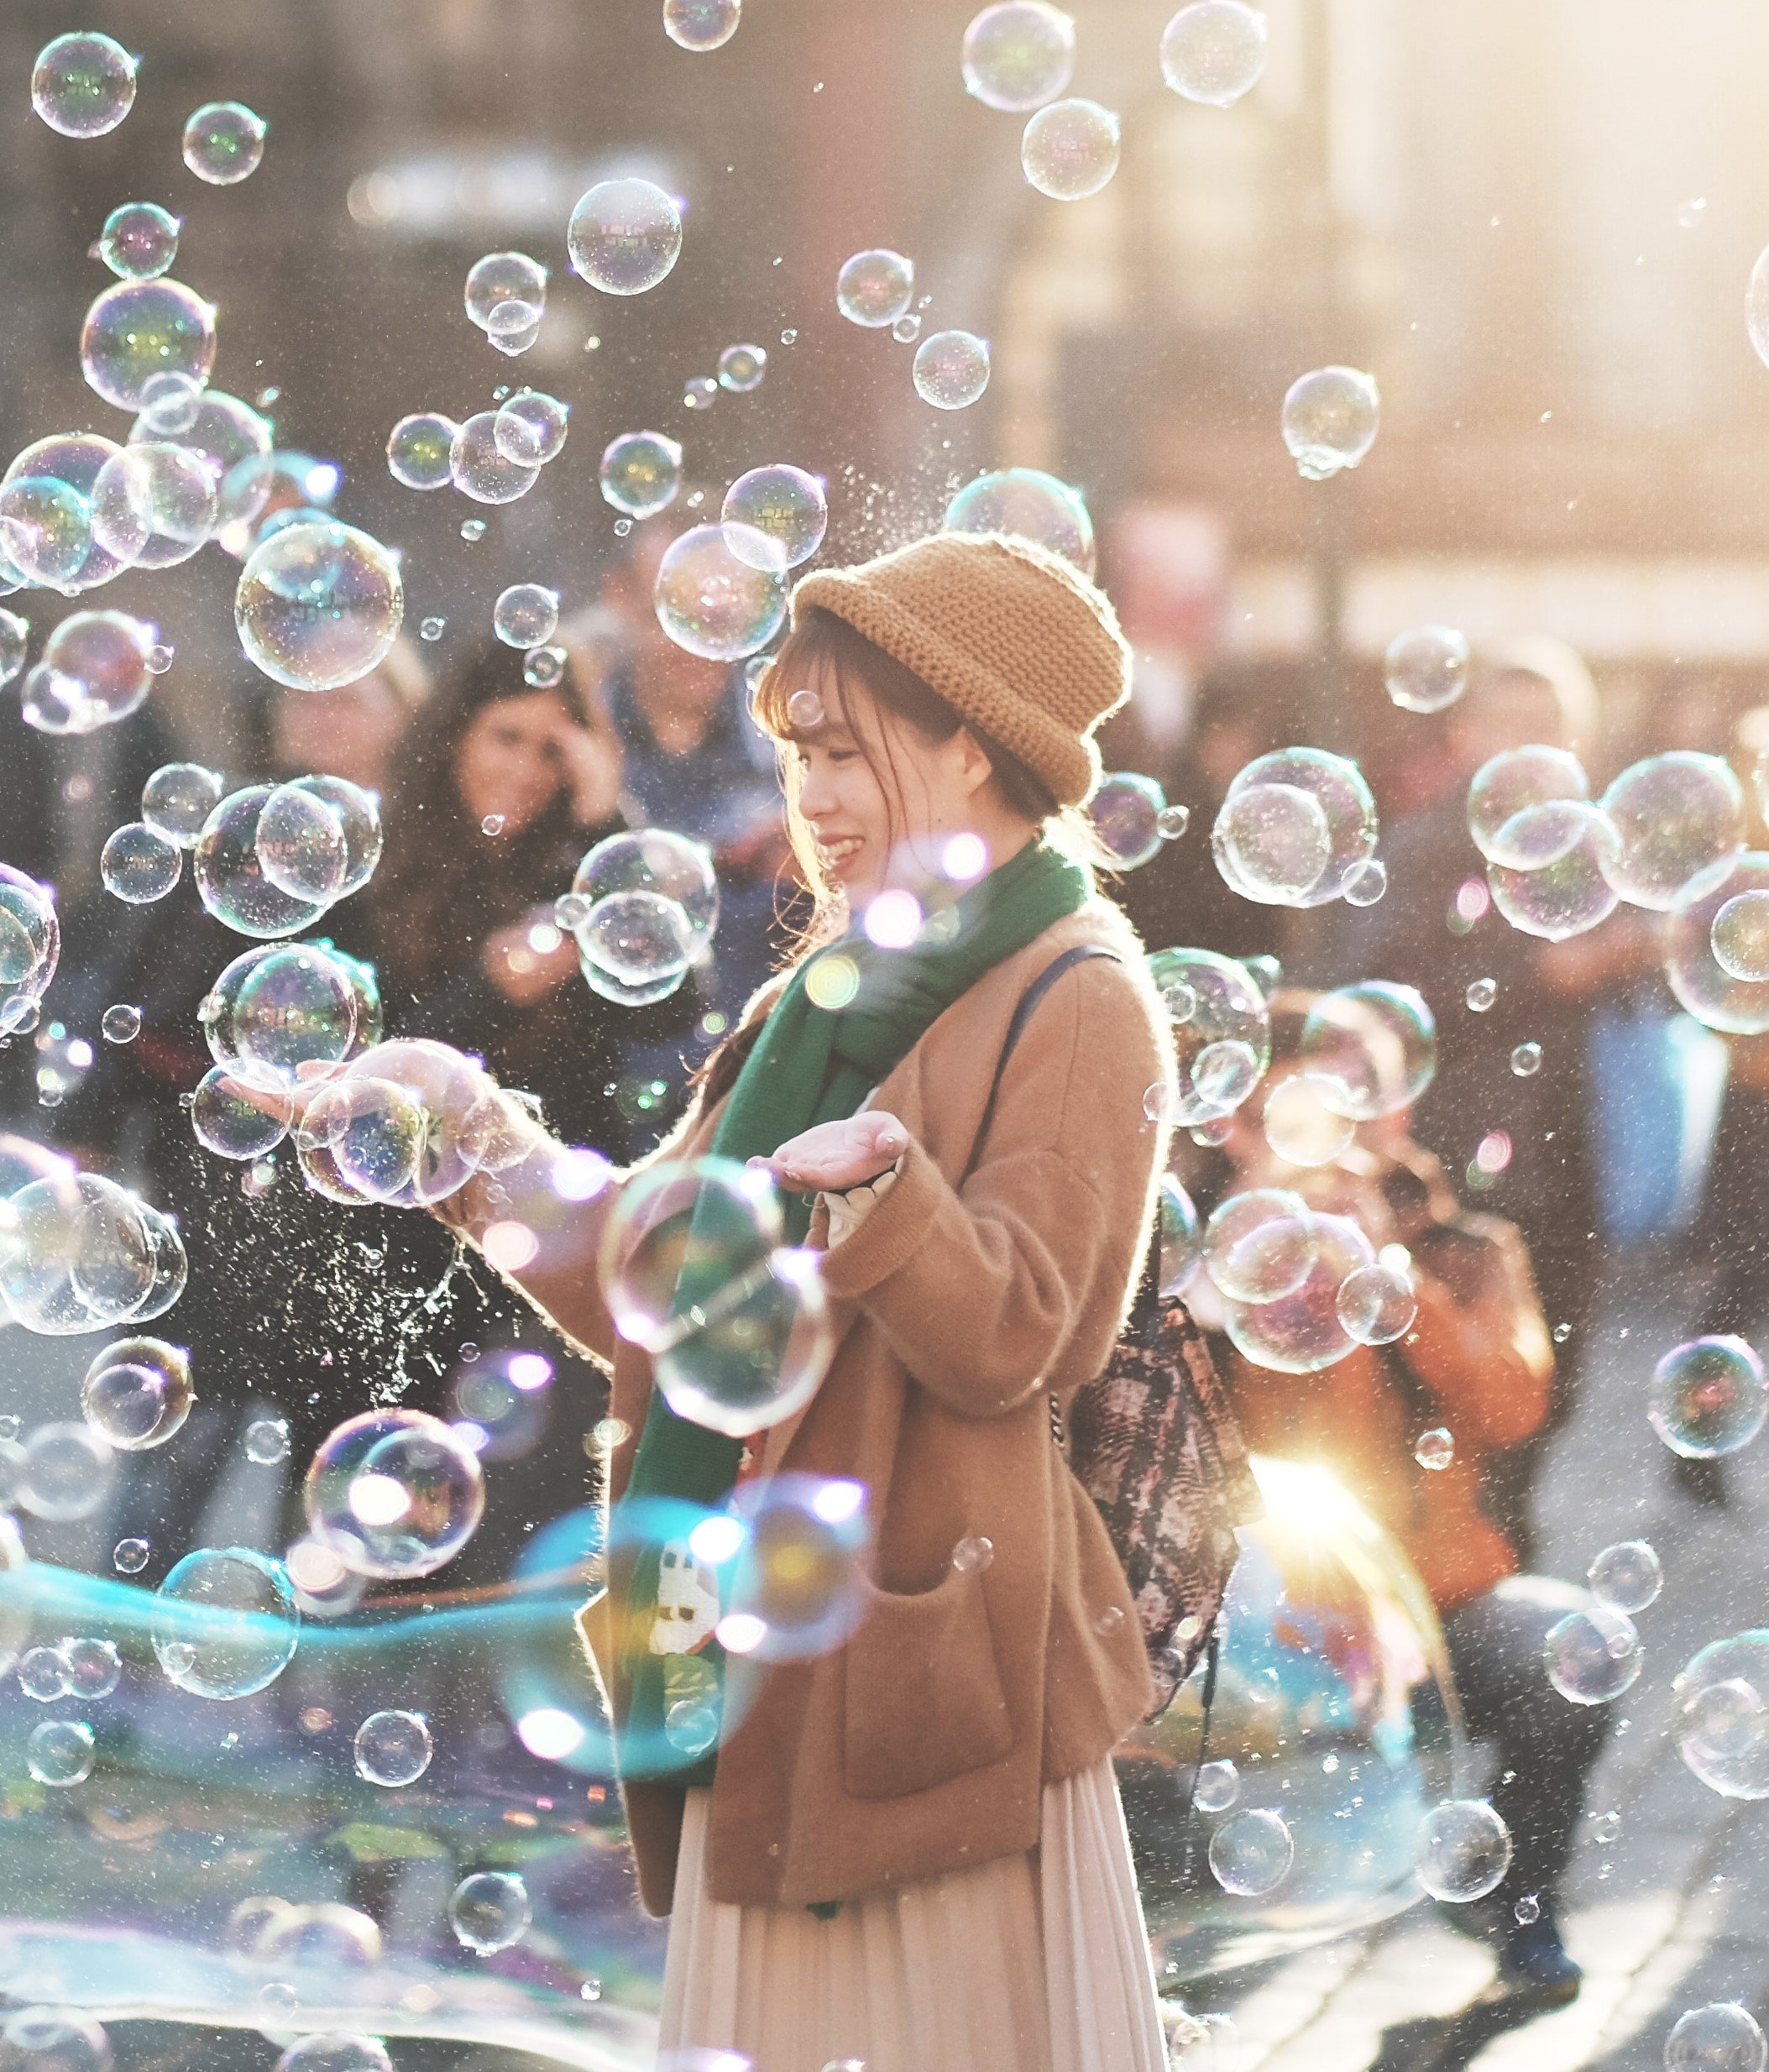 Mulher no meio da rua com bolhas de sabão e pessoas ao seu redor